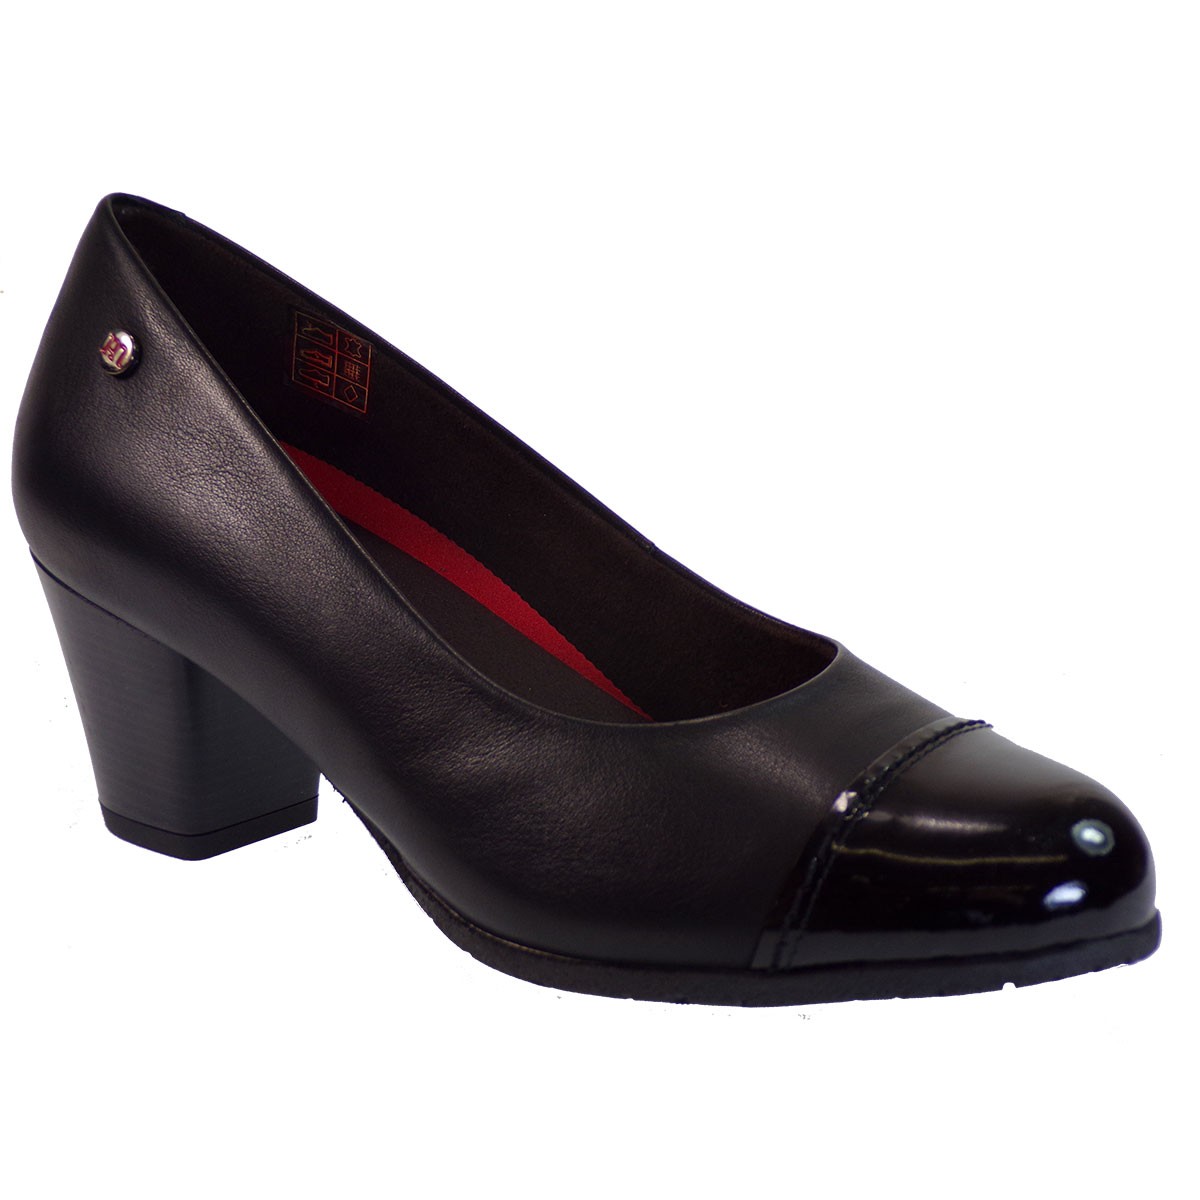 PEPE MENARGUES SHOES Γυναικεία Παπούτσια 6701-Ν Μαύρο Δέρμα